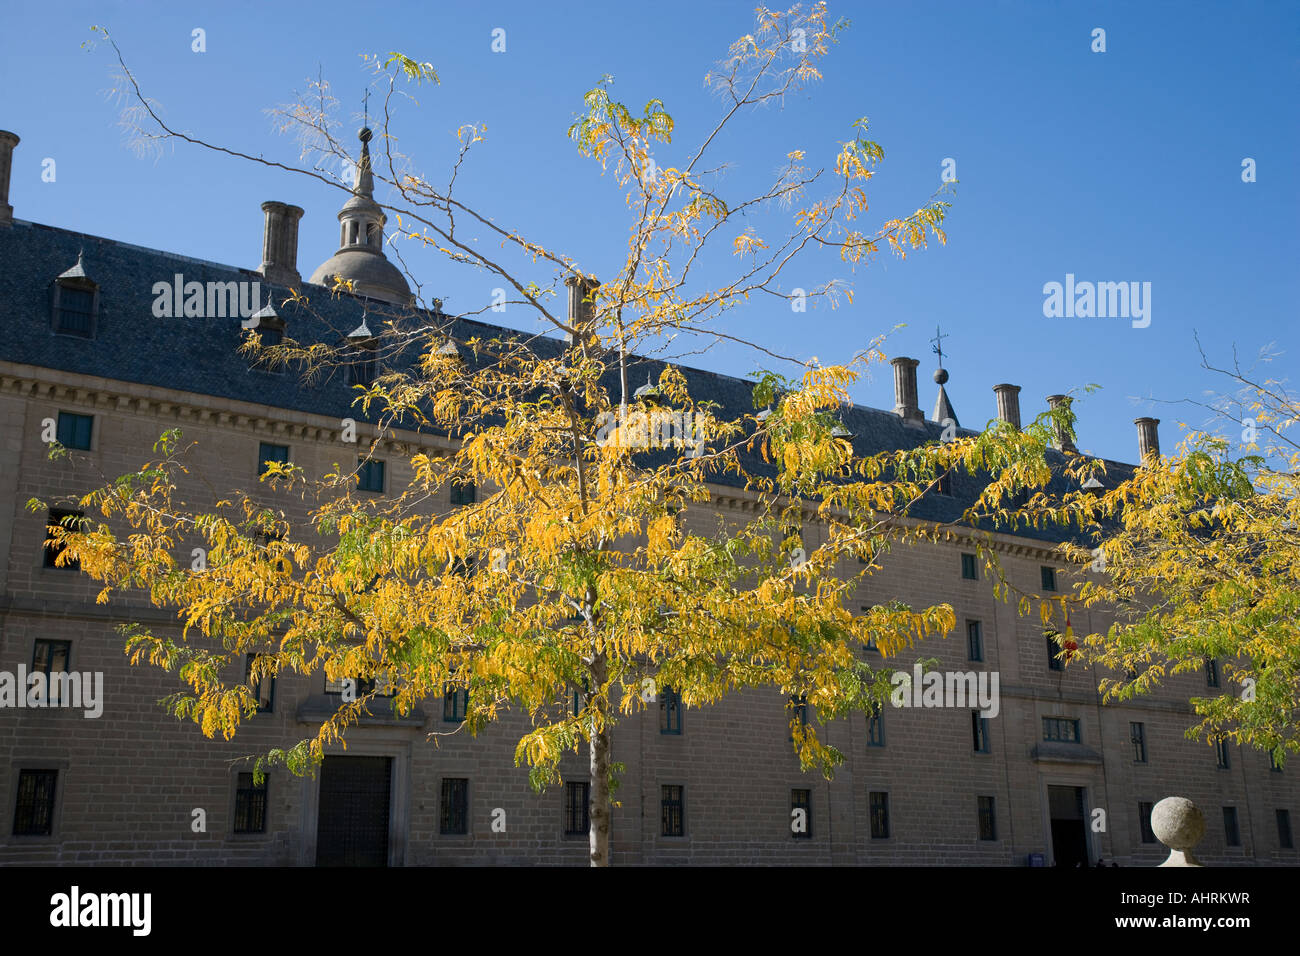 El Escorial in autumn Stock Photo